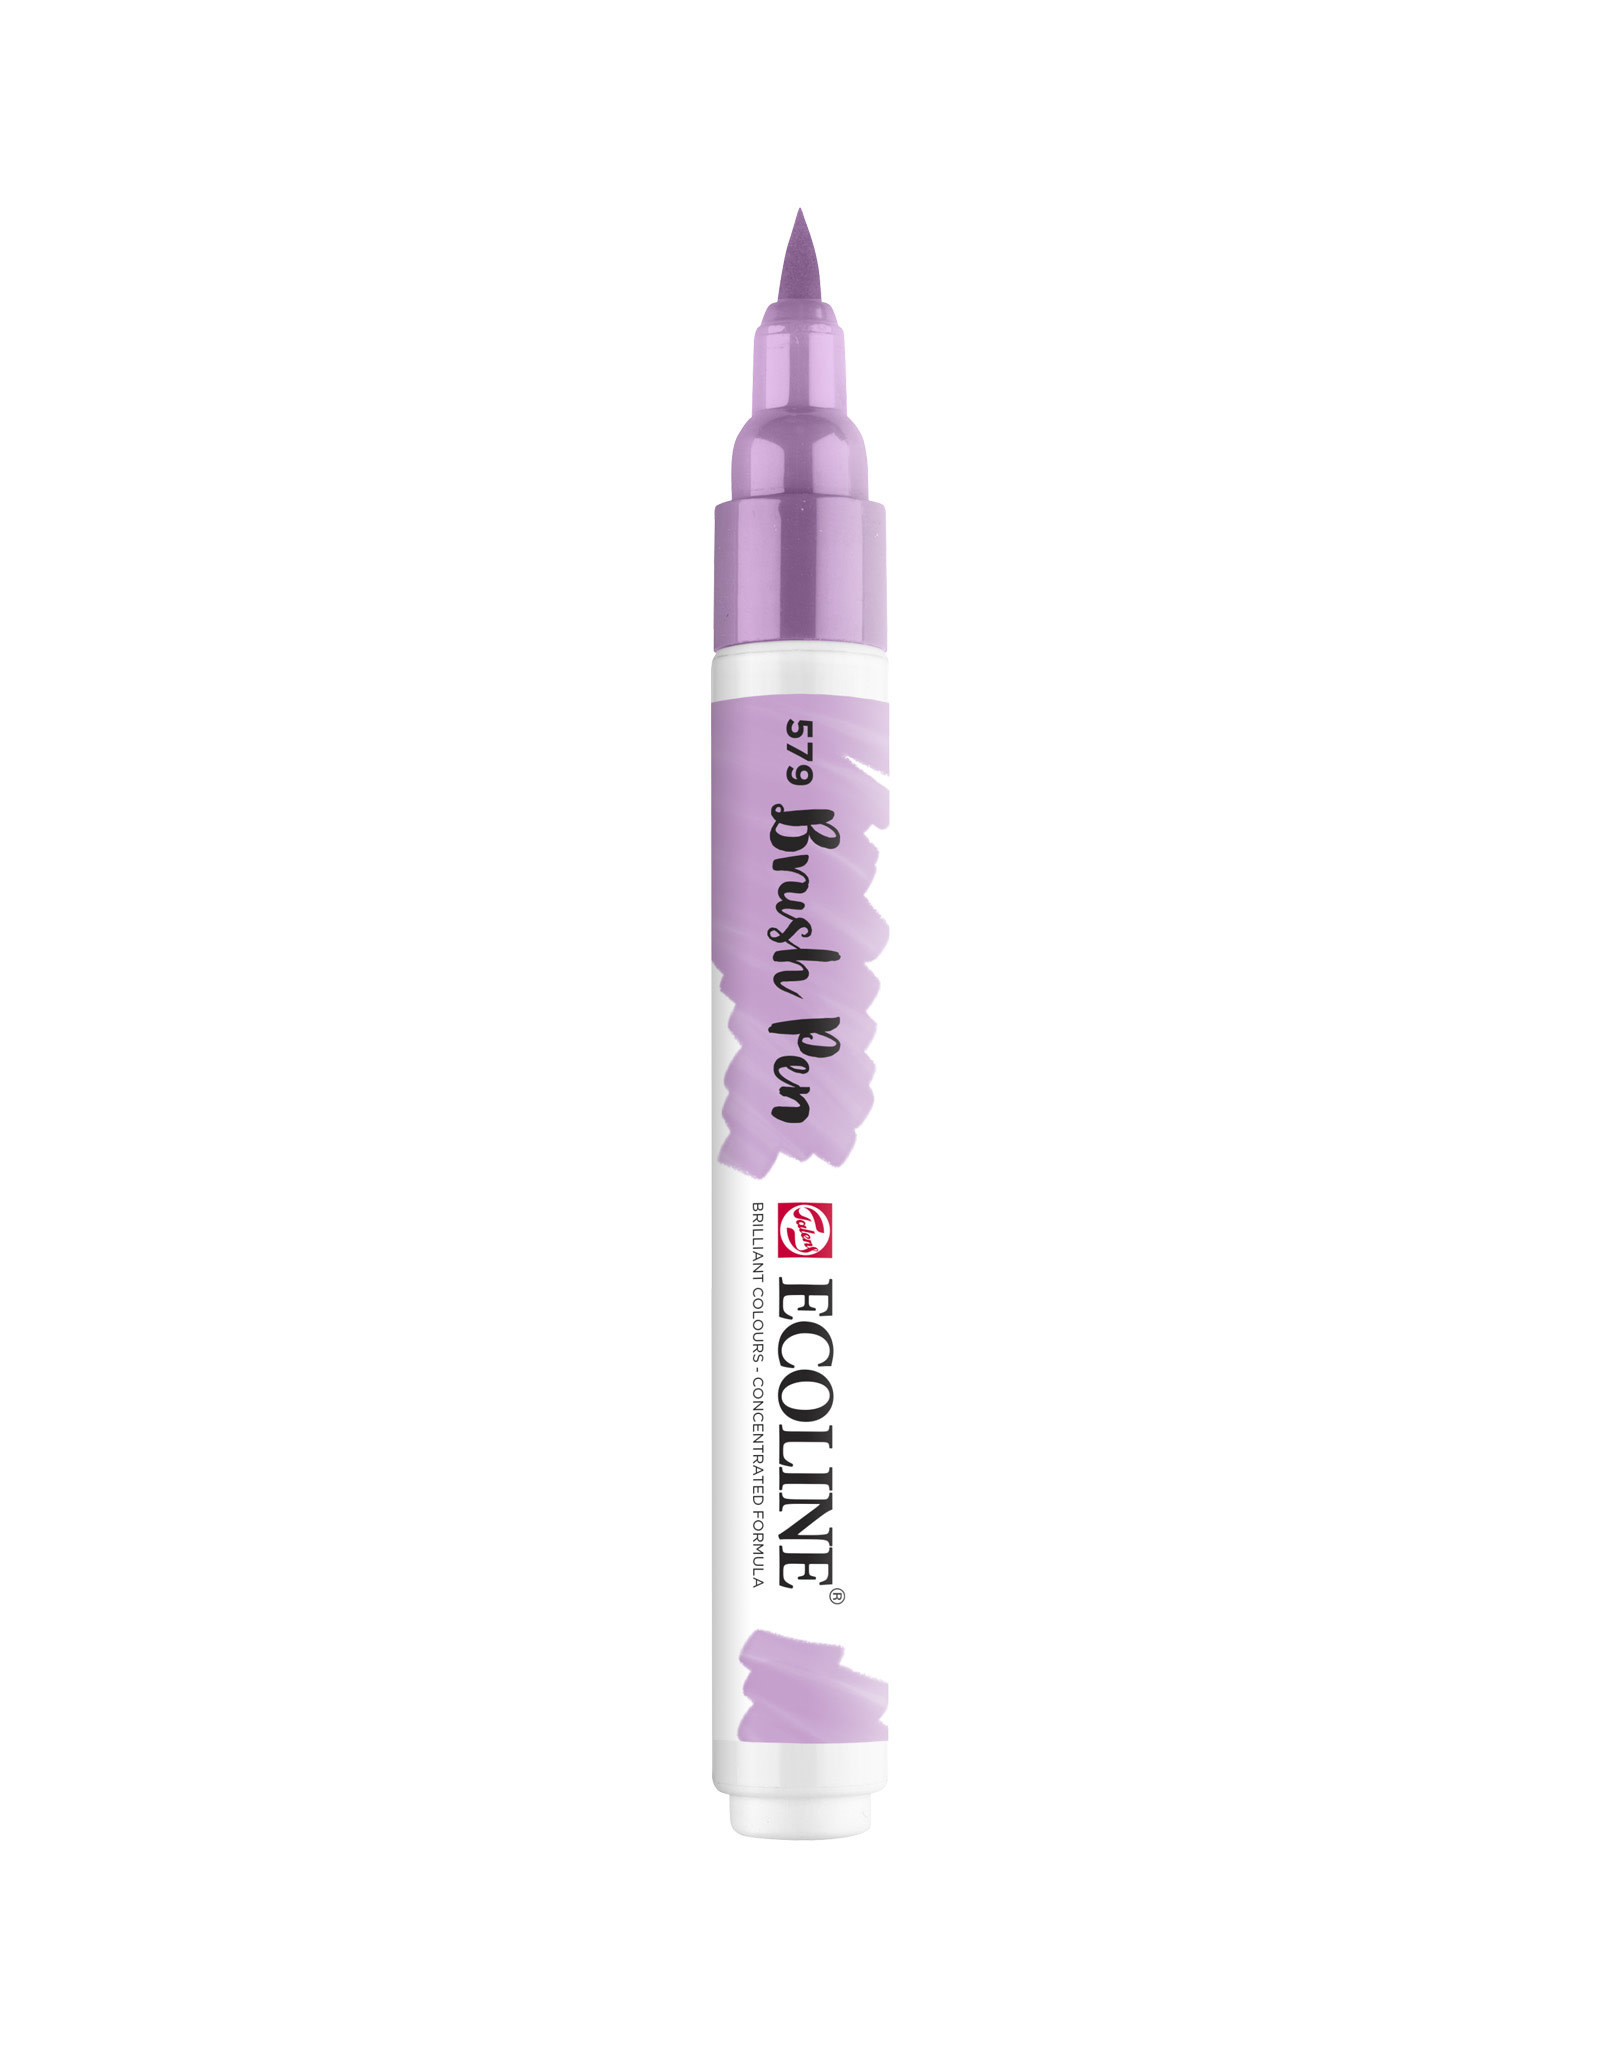 Royal Talens Ecoline Watercolour Brush Pen, Pastel Violet